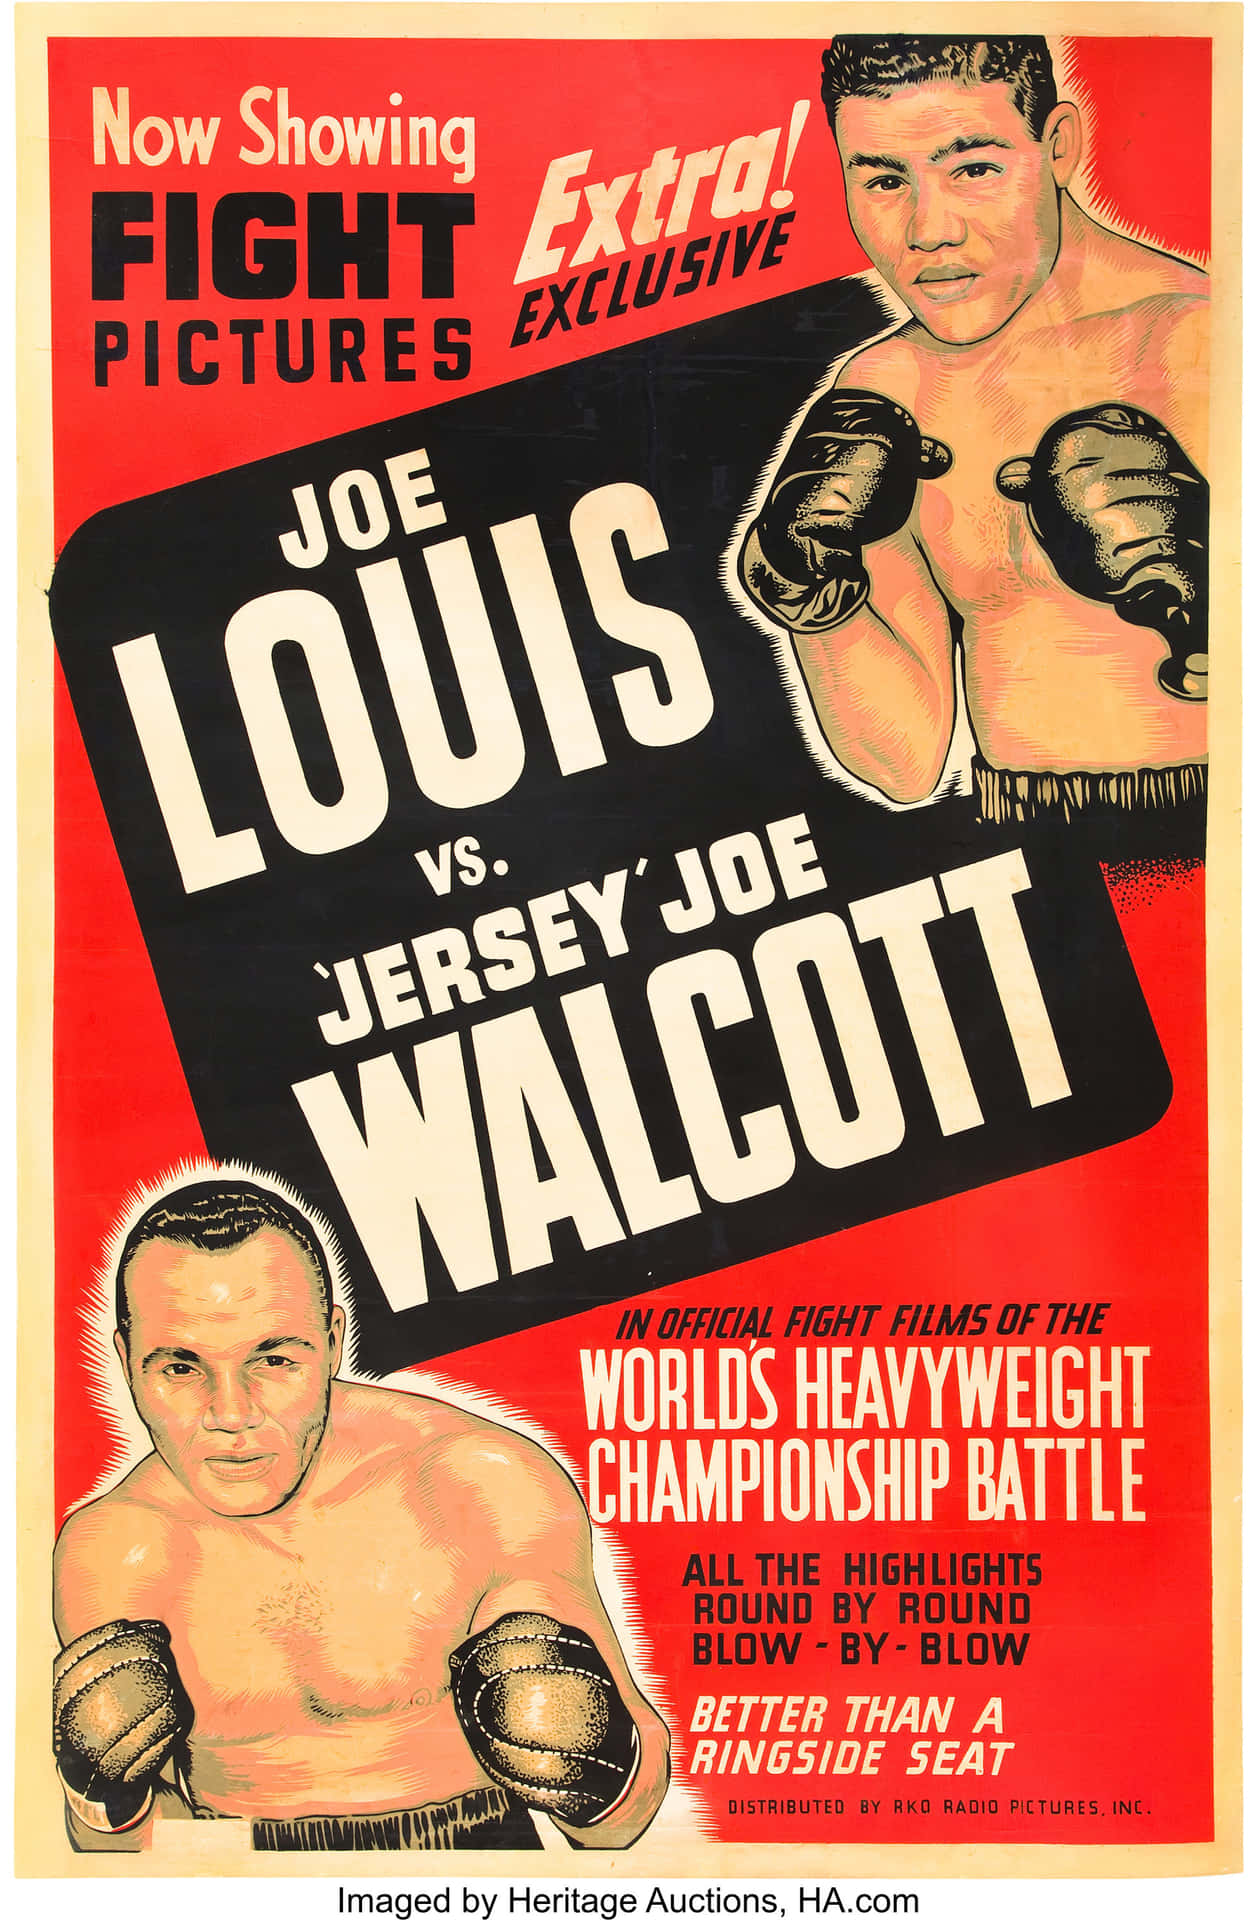 Jersey Joe Walcott And Joe Louis Fight Poster Wallpaper